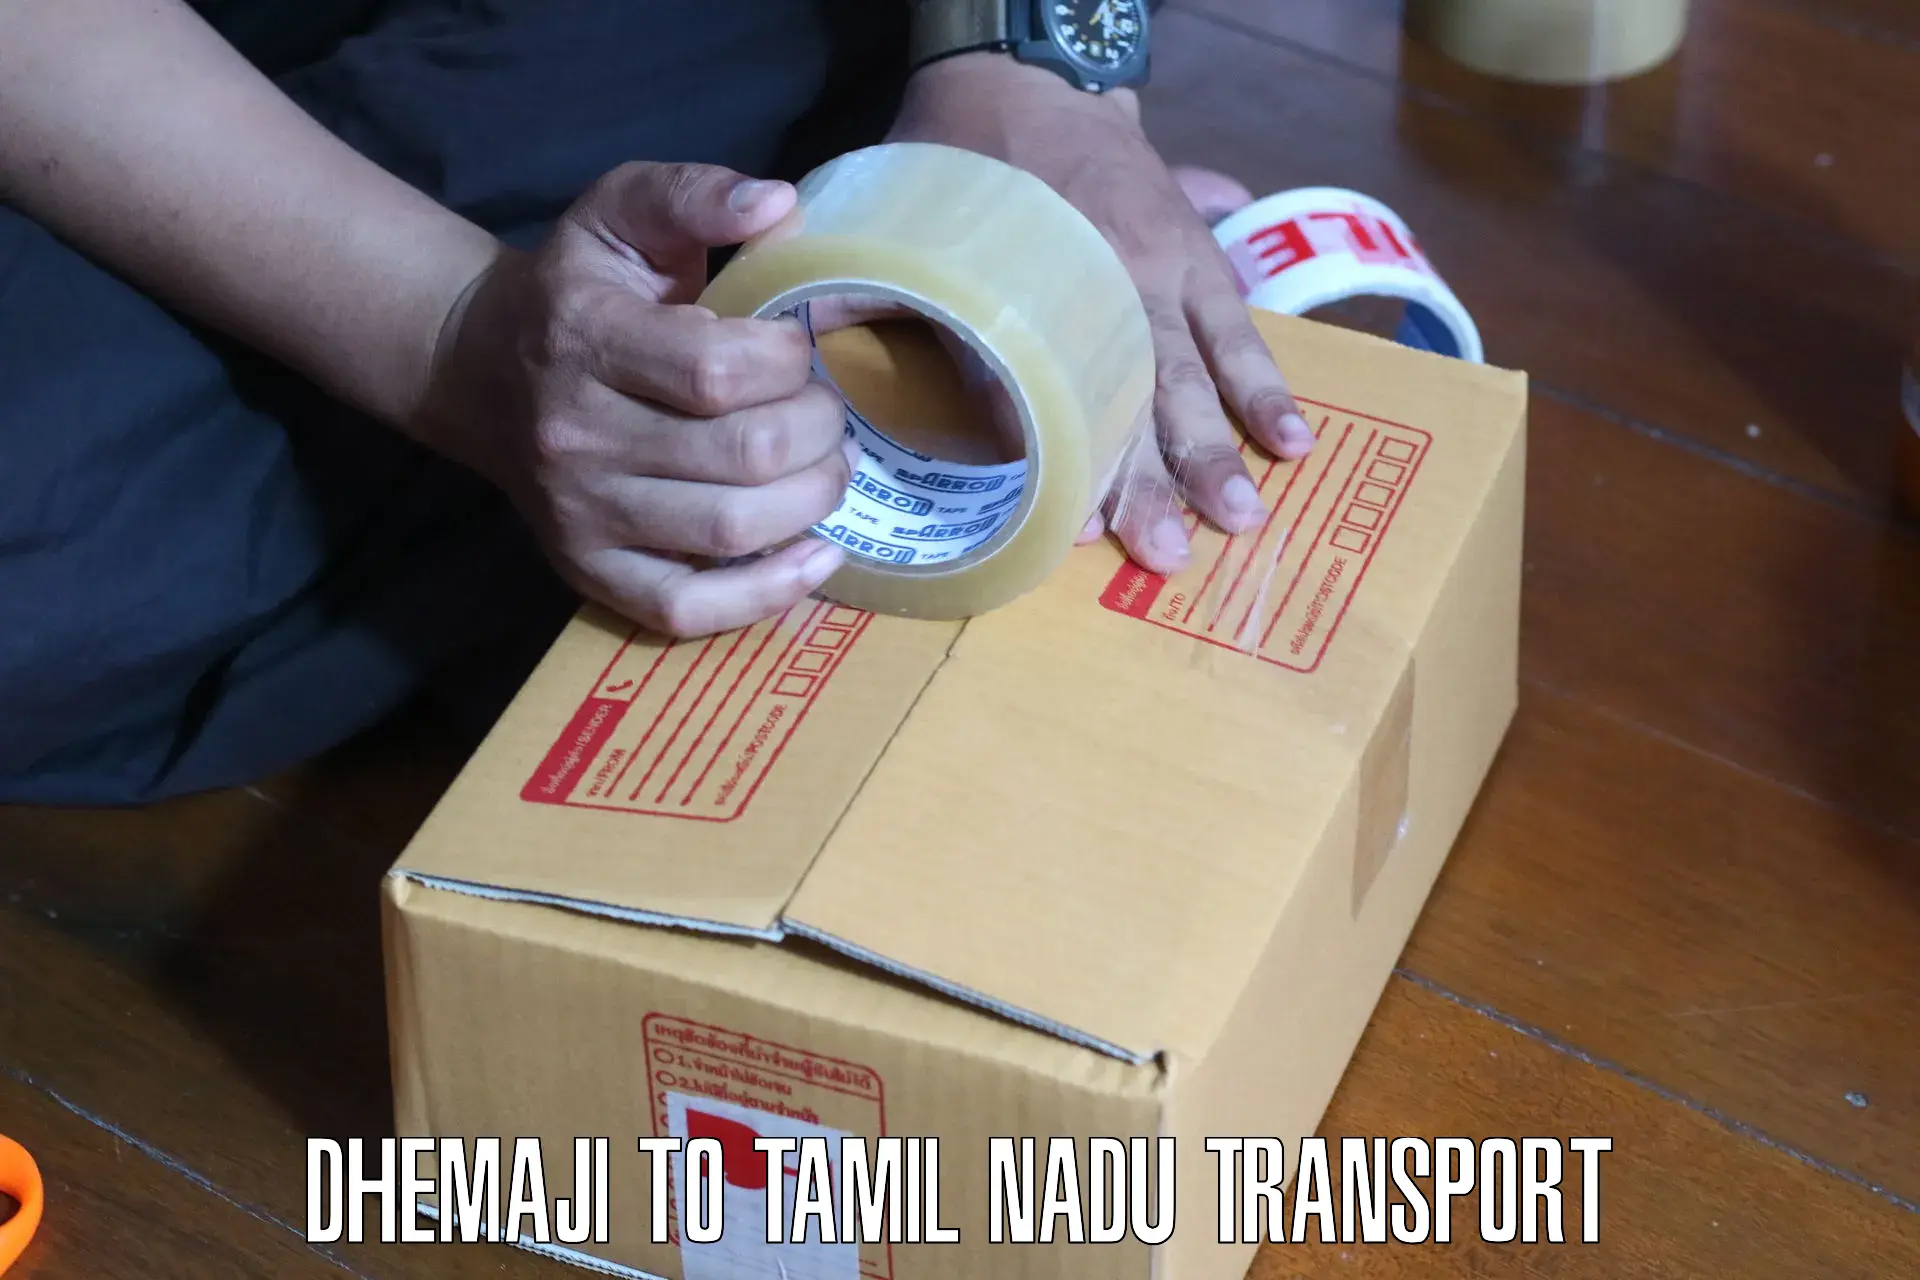 Delivery service Dhemaji to Thiruvadanai